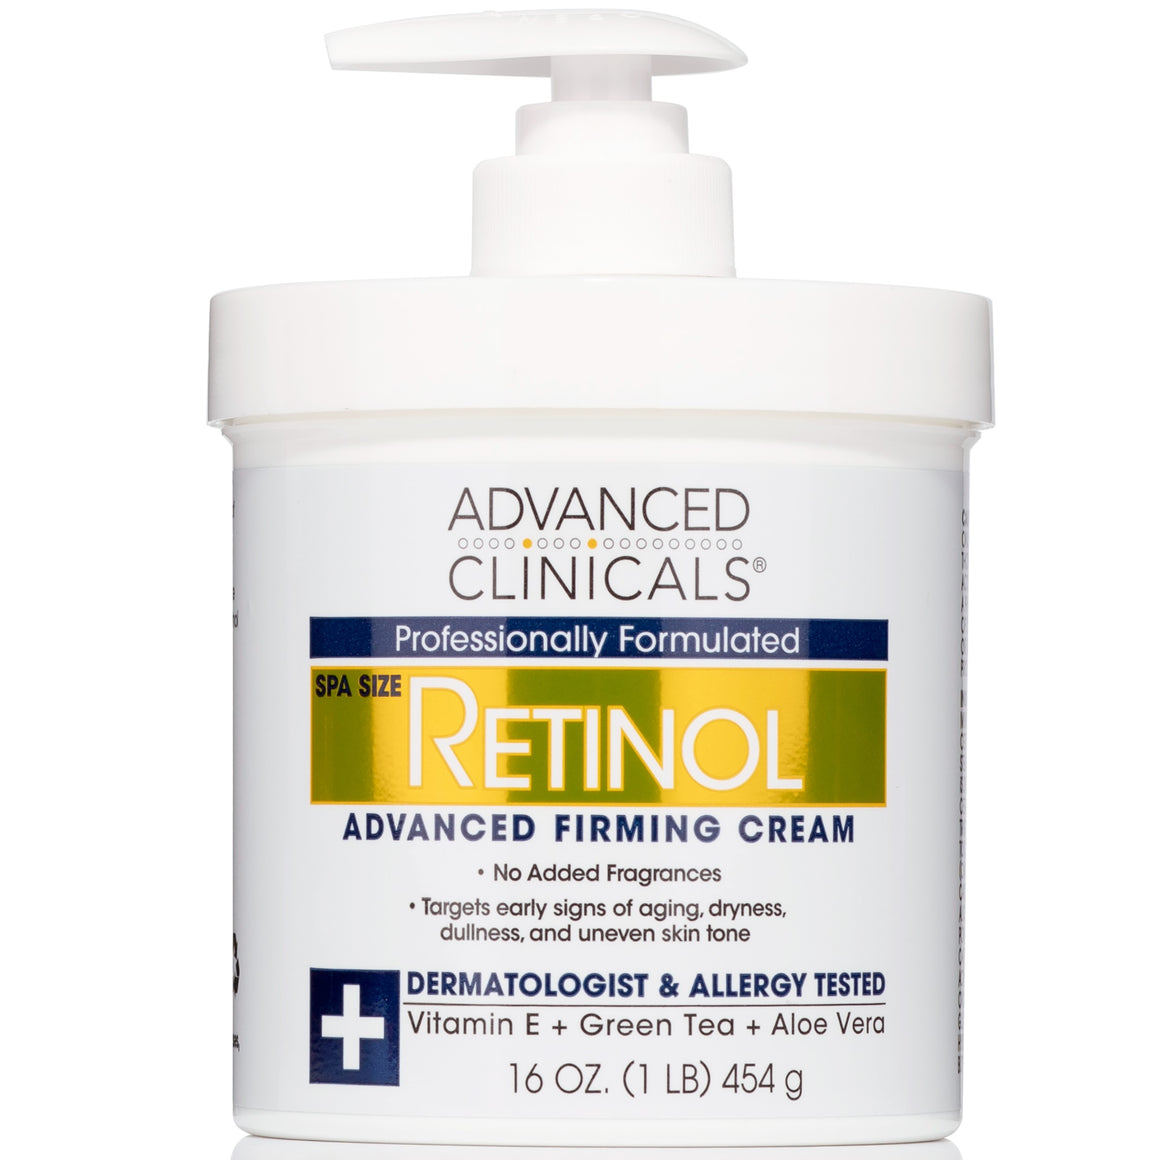 Retinol Advanced Firming Cream (No Added Fragrance)